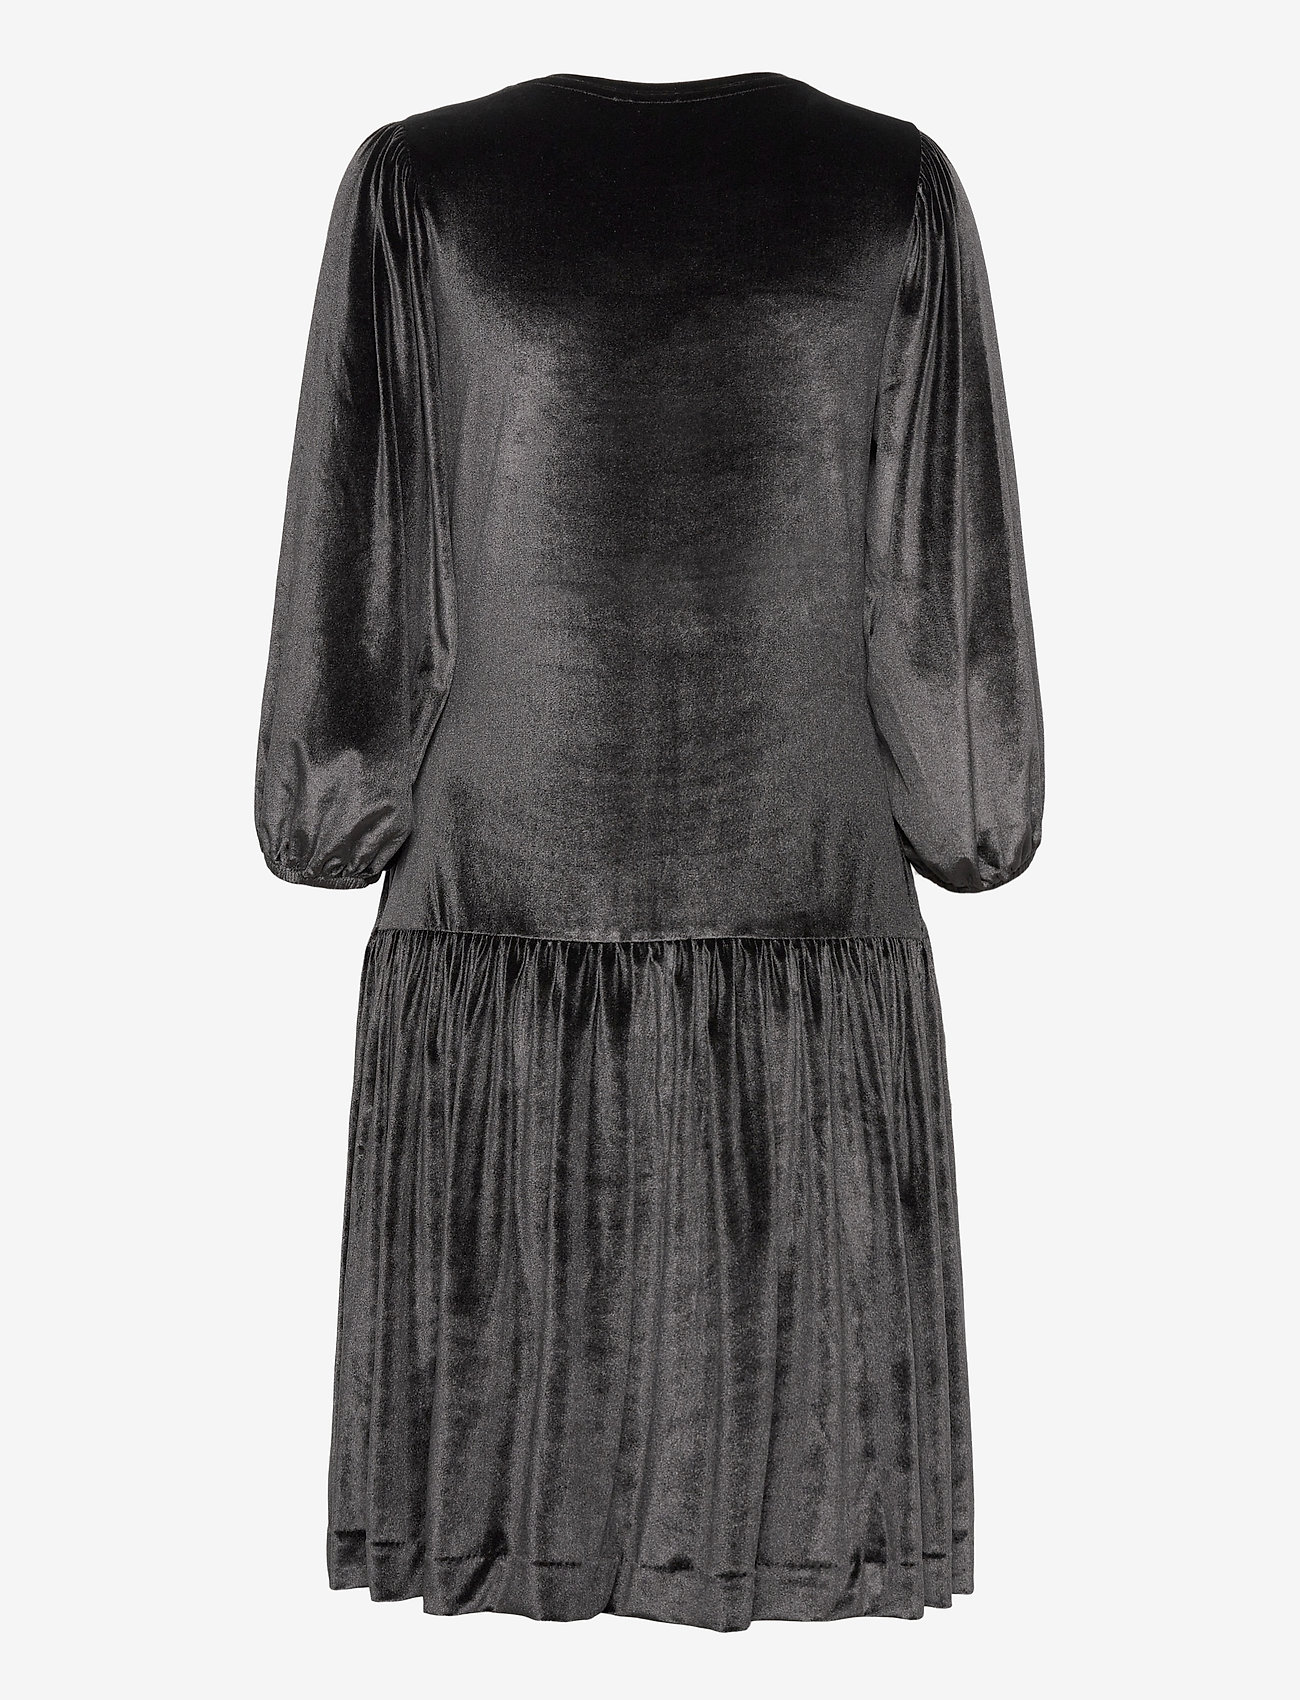 InWear - FarylIW Short Dress - korte jurken - black - 1